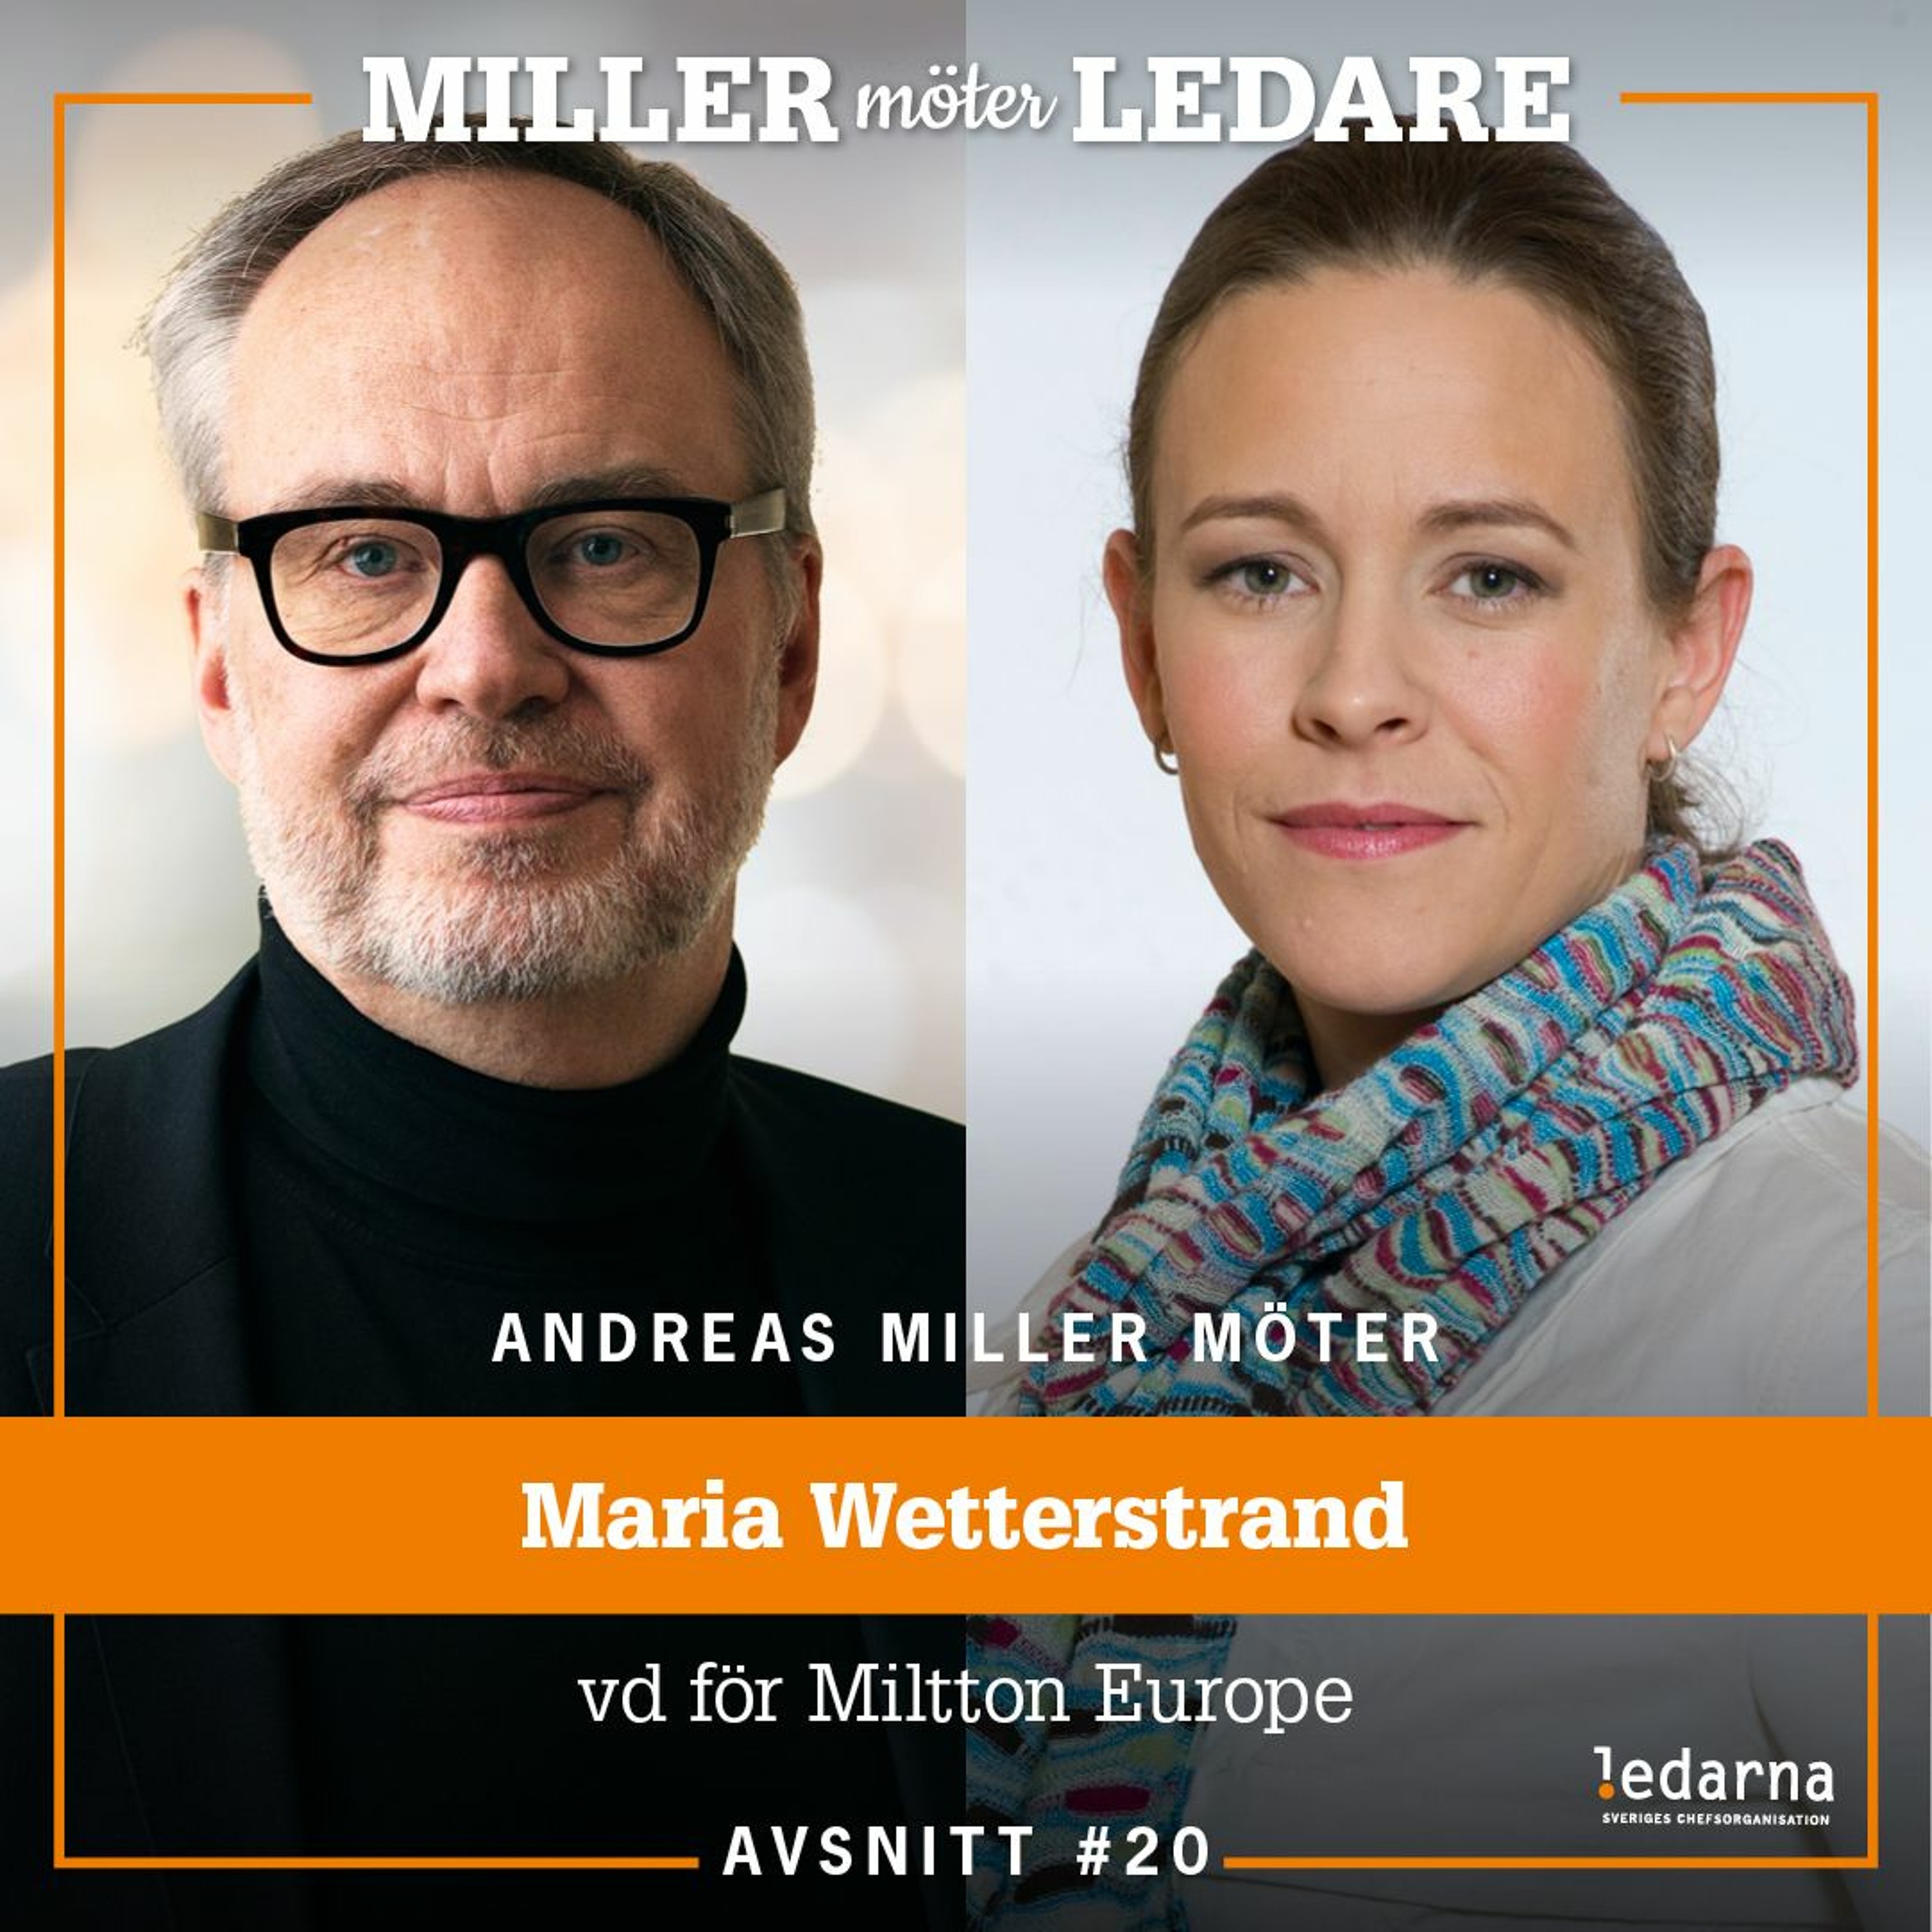 Maria Wetterstrand – vd Miltton Europe, tidigare språkrör för Miljöpartiet